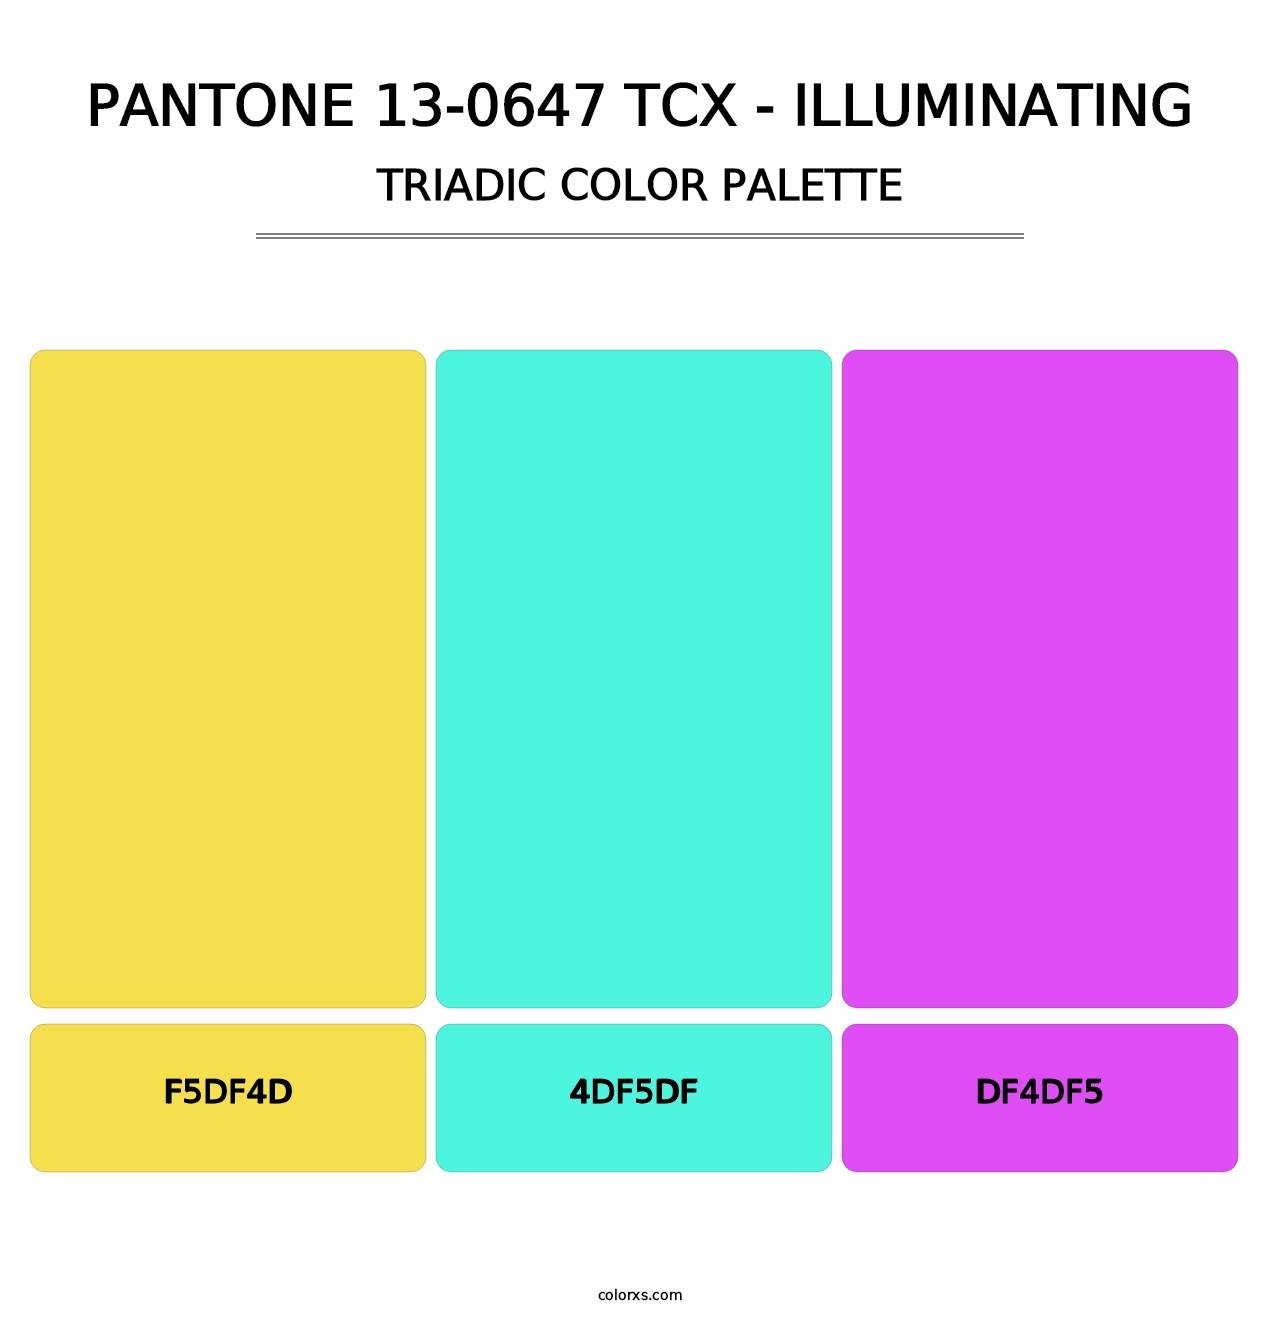 PANTONE 13-0647 TCX - Illuminating - Triadic Color Palette